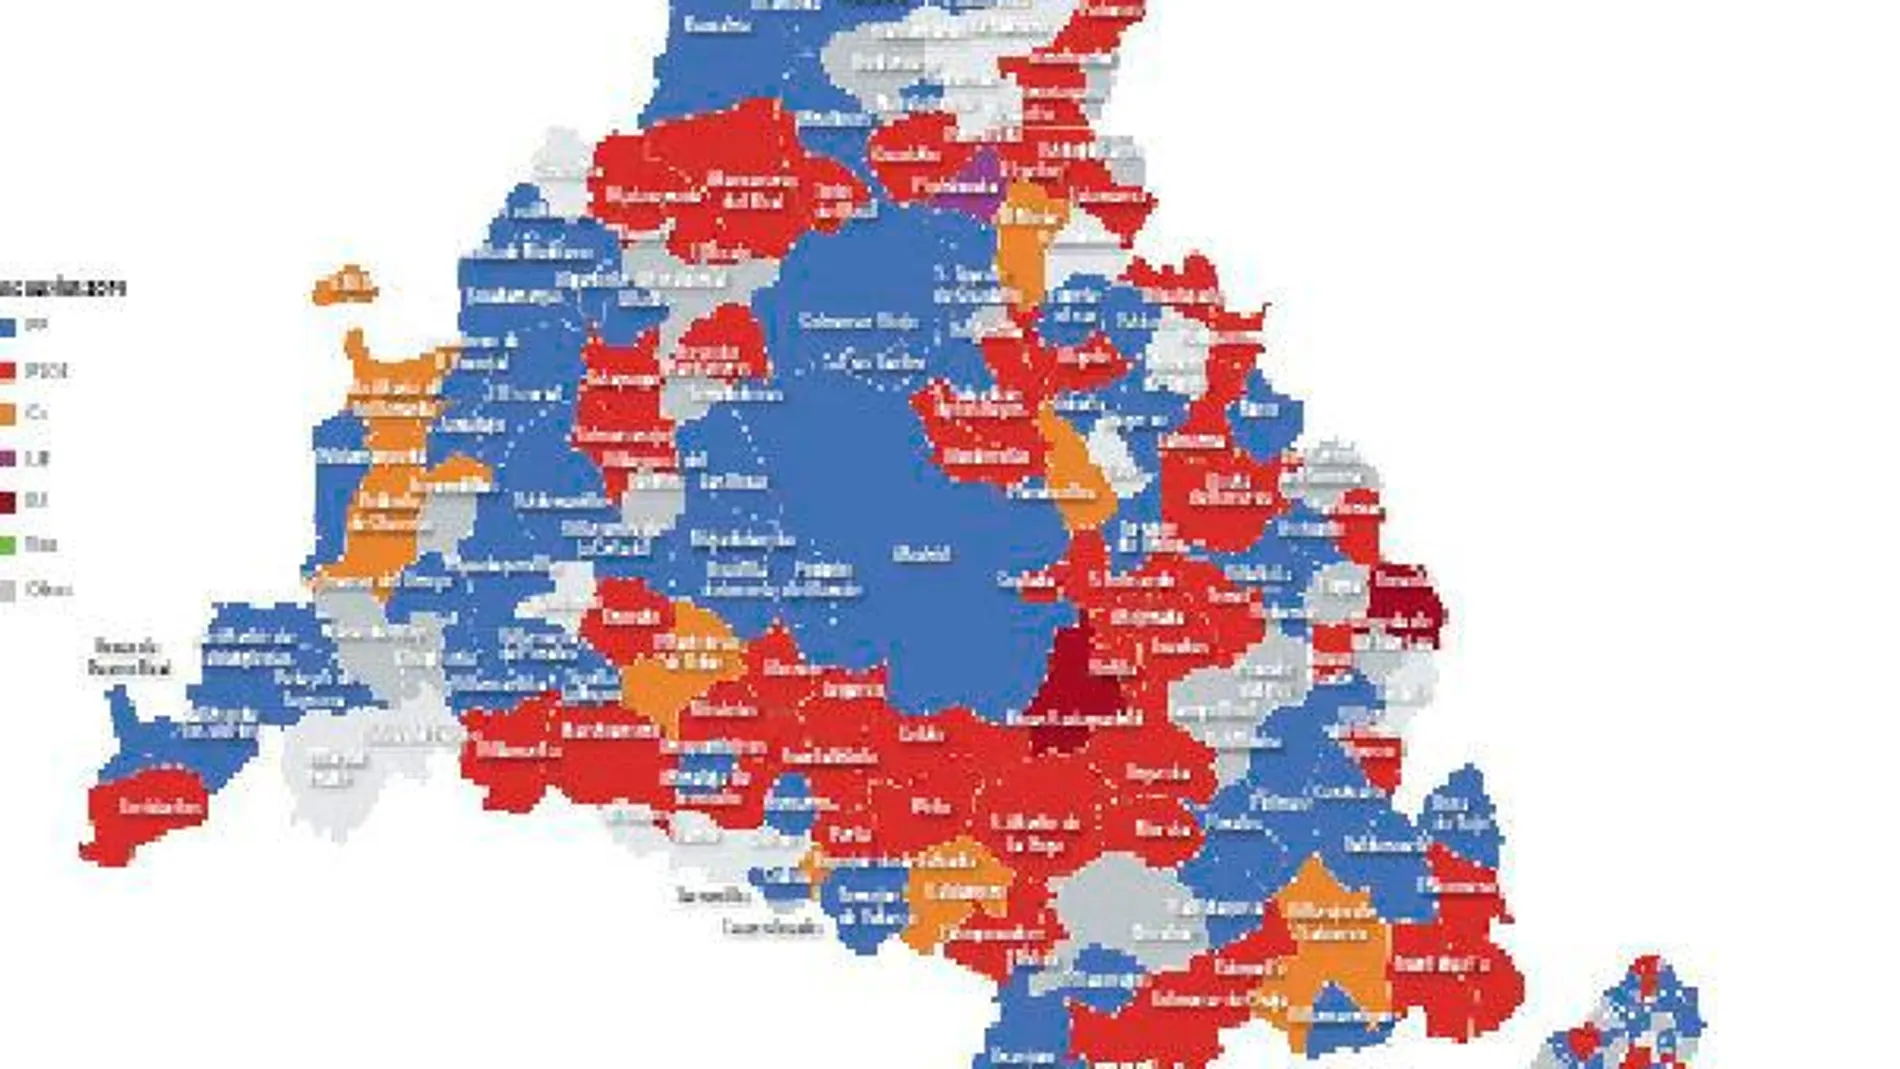 Imagen del mapa de la comunidad de Madrid con los municipios coloreados según el partido que gobernará los próximos 4 años